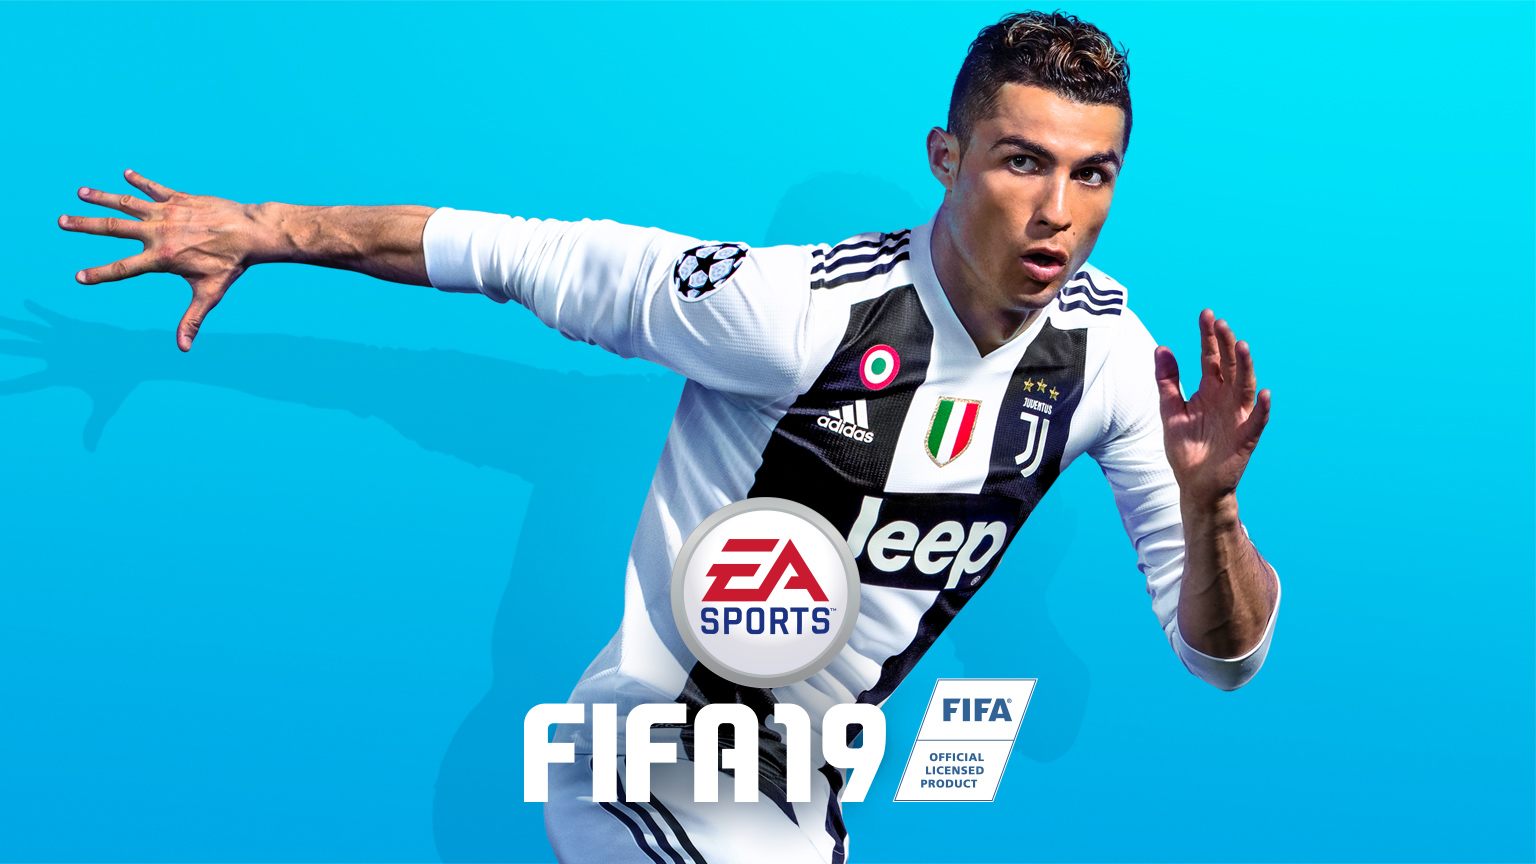 FIFA 19 Picture